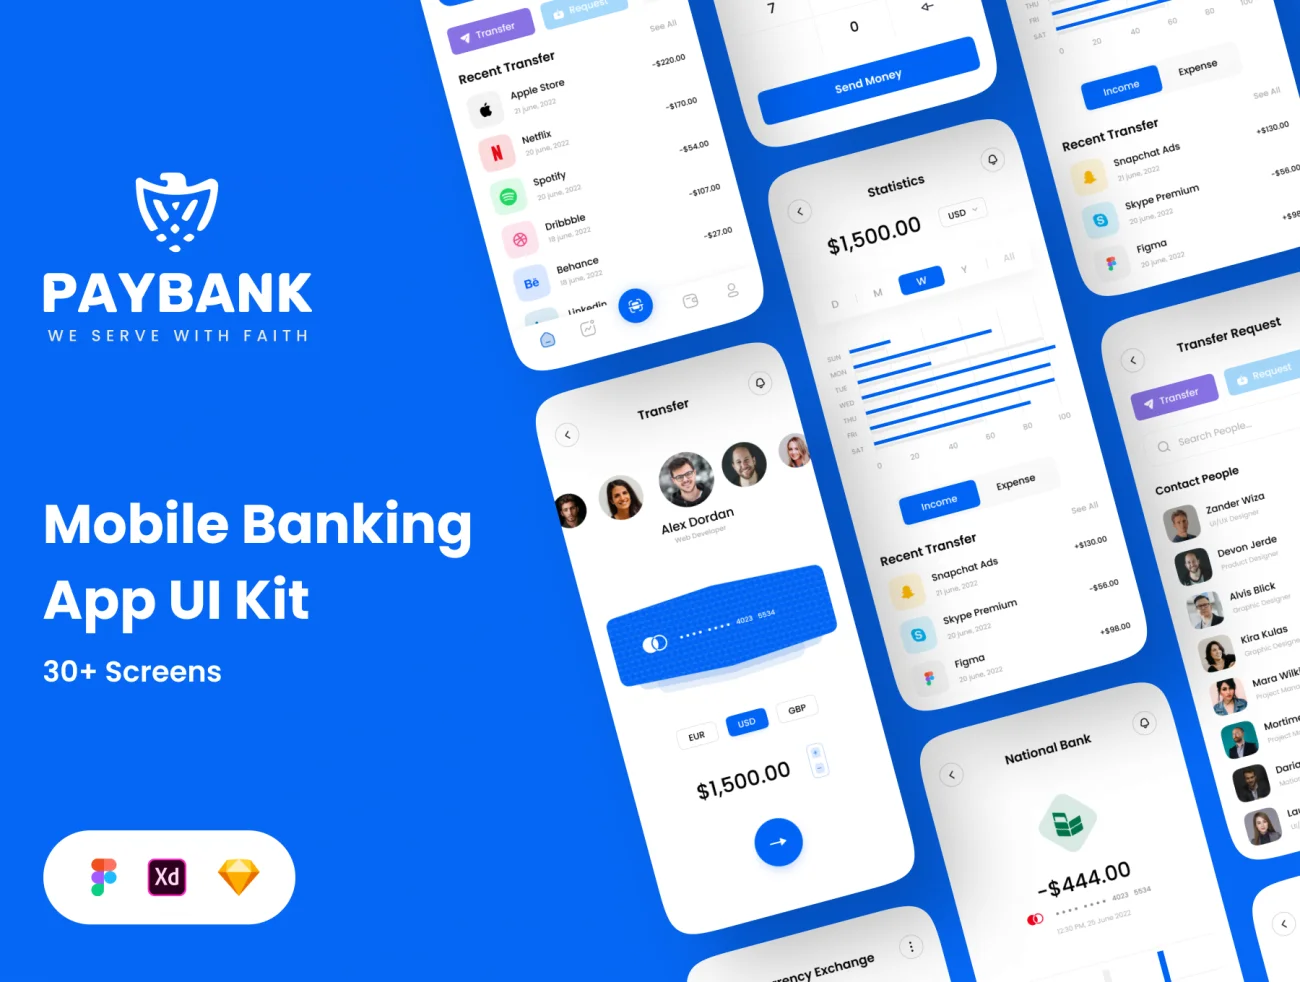 手机银行金融理财应用程序 UI 套件30屏 Paybank - Mobile Banking App UI Kit .sketch .xd .figma-UI/UX、ui套件、主页、列表、卡片式、图表、应用、数据可视化-仪表板、注册、电子钱包、表单-到位啦UI